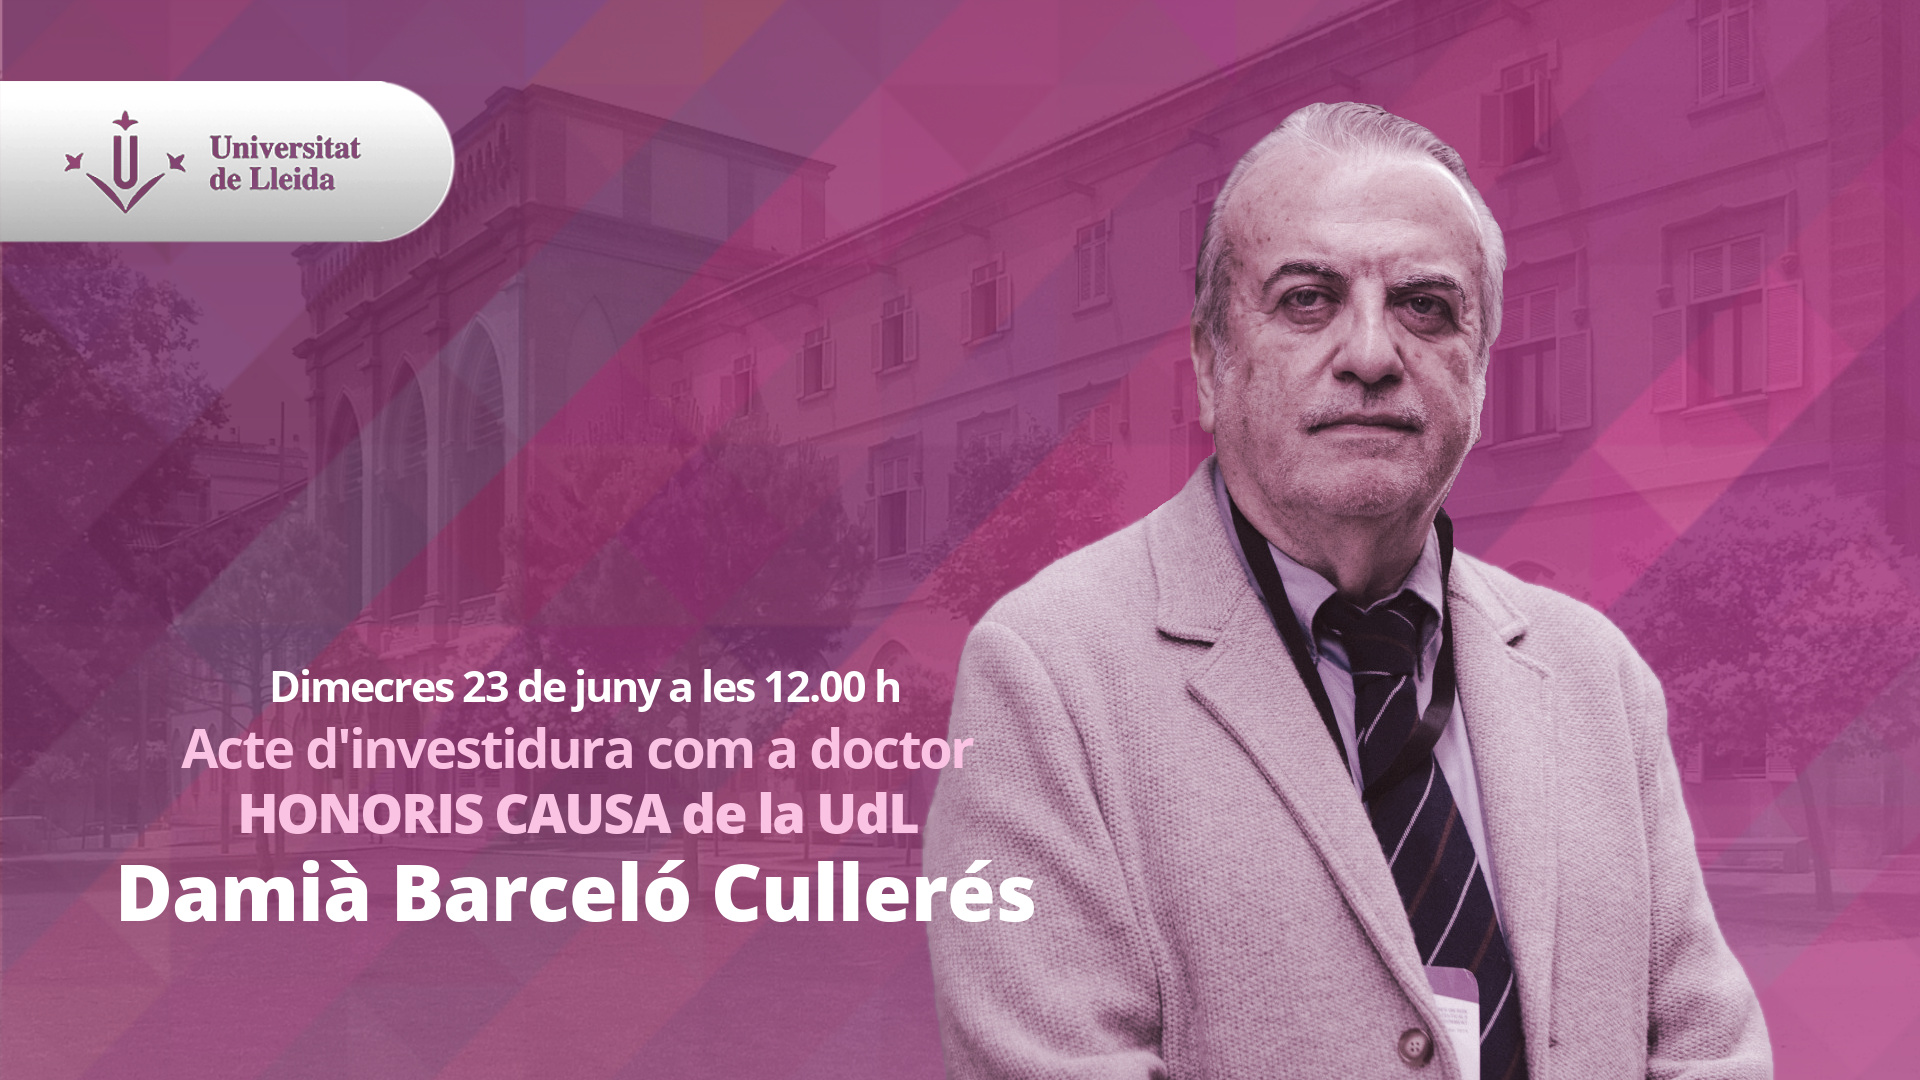 Damià Barceló Cullerés, Honoris Causa de la UdL